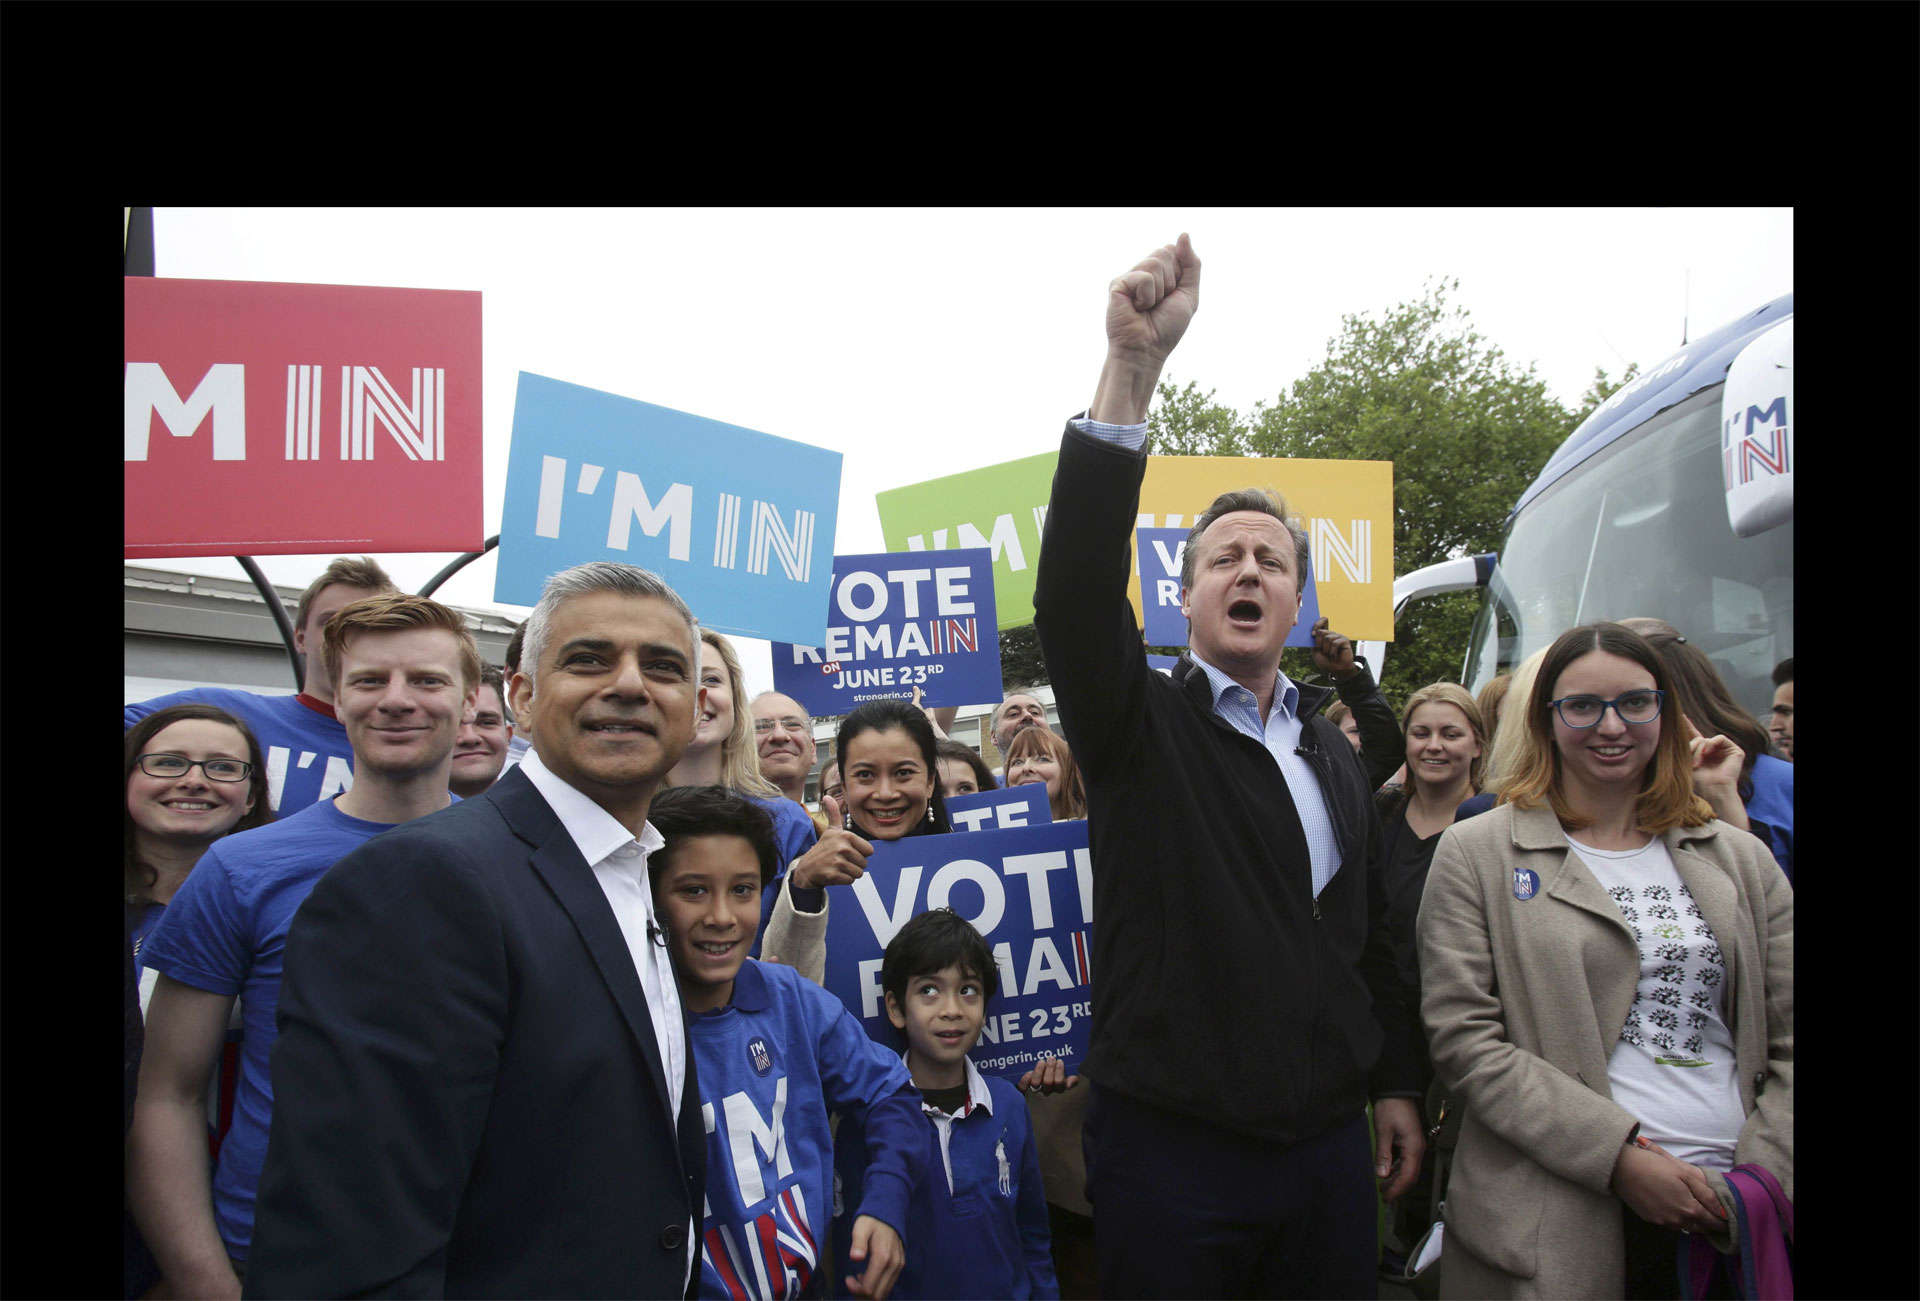 Khan ayudo en la campaña a favor de la permanencia del Reino Unido en la UE